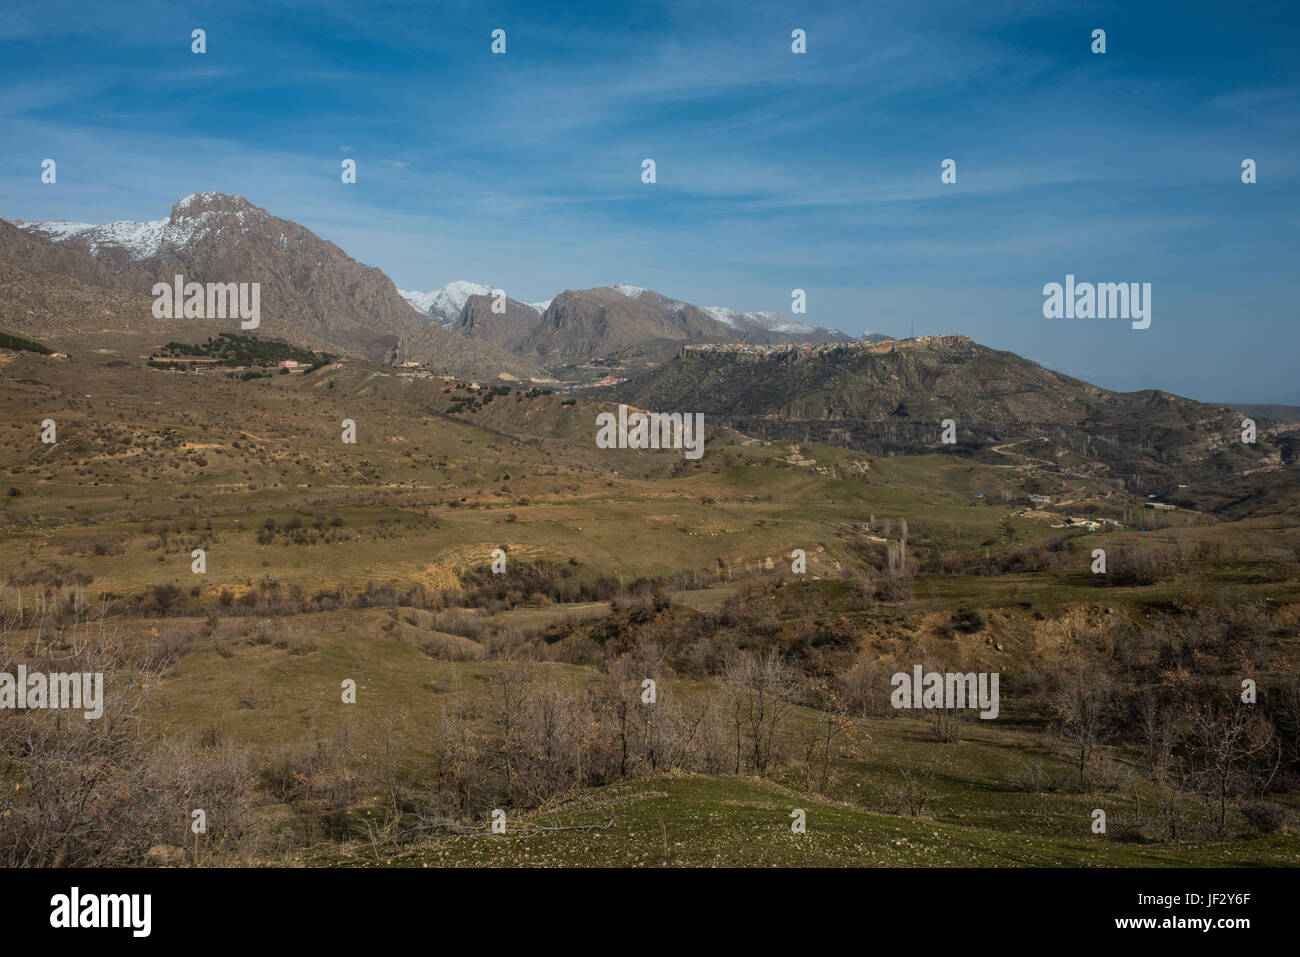 The mountain village of Amadiya set in the high mountains of Iraq Kurdistan Stock Photo